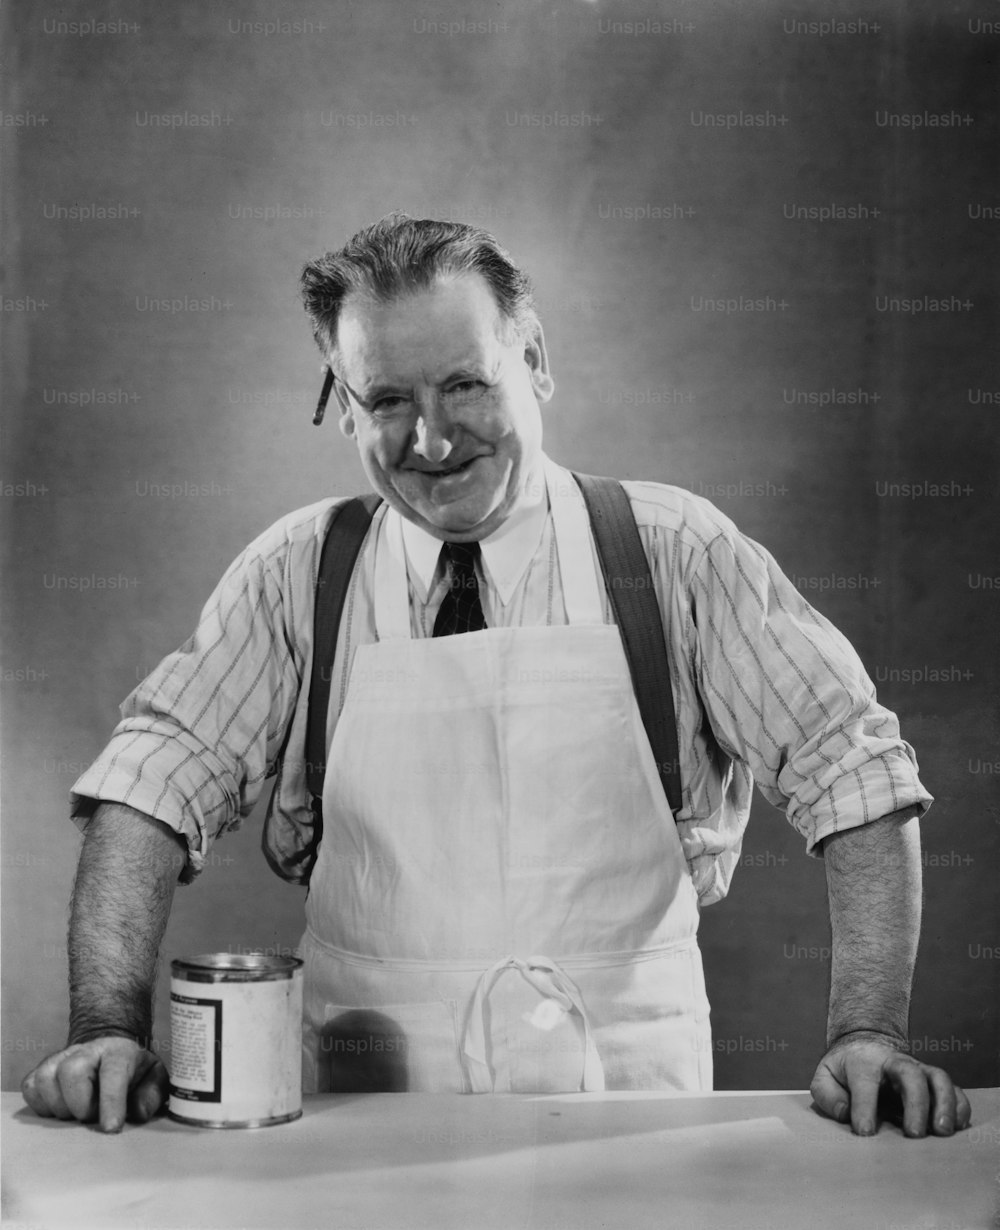 Un commerçant avec une boîte de conserve, vers 1940.  (Photo de George Marks/Retrofile/Getty Images)